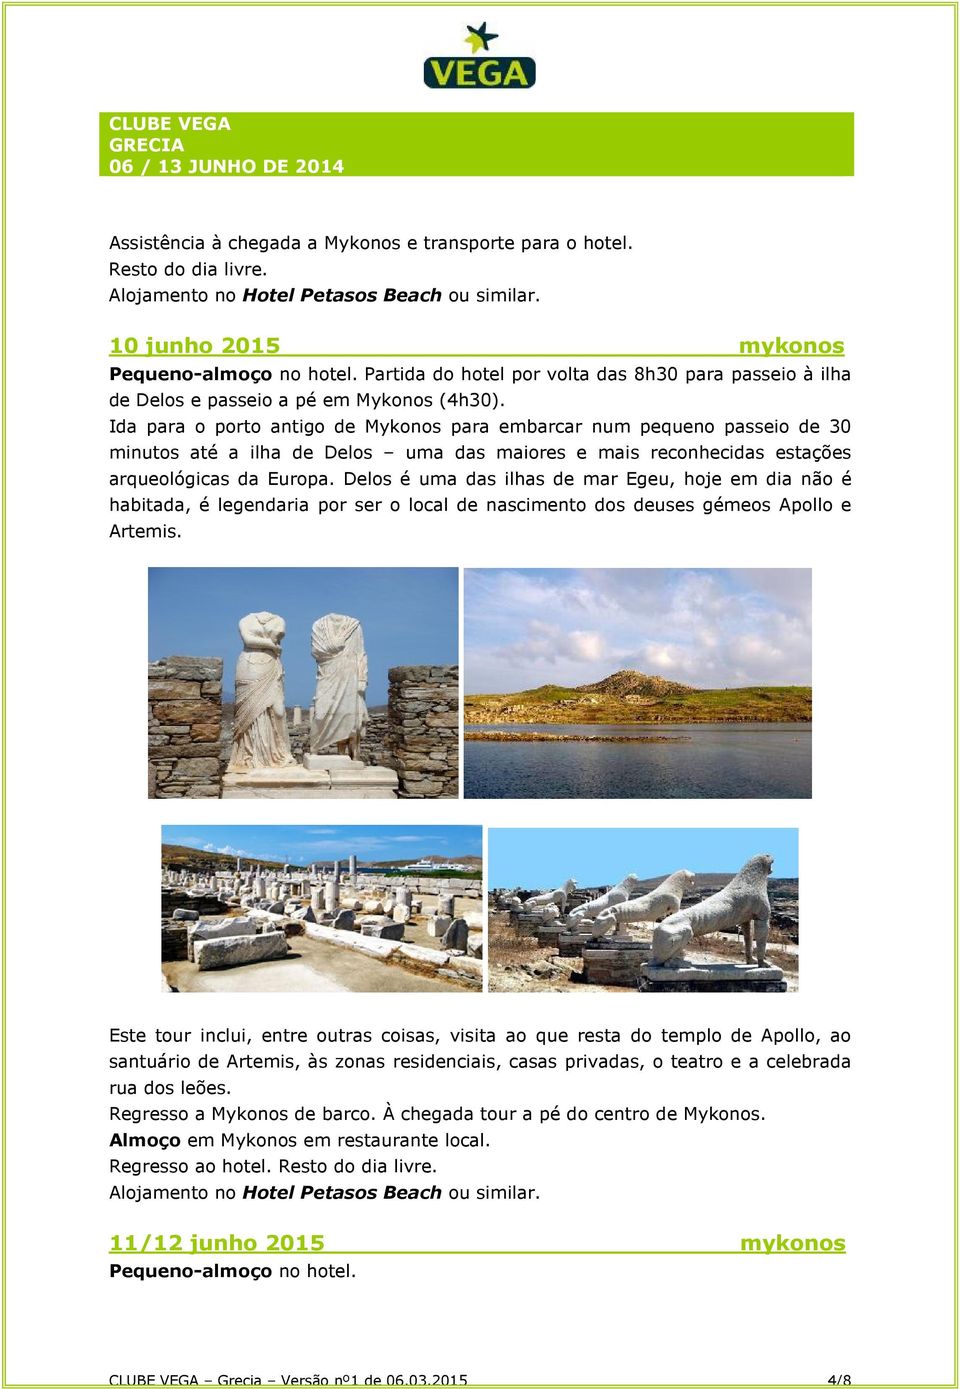 Ida para o porto antigo de Mykonos para embarcar num pequeno passeio de 30 minutos até a ilha de Delos uma das maiores e mais reconhecidas estações arqueológicas da Europa.